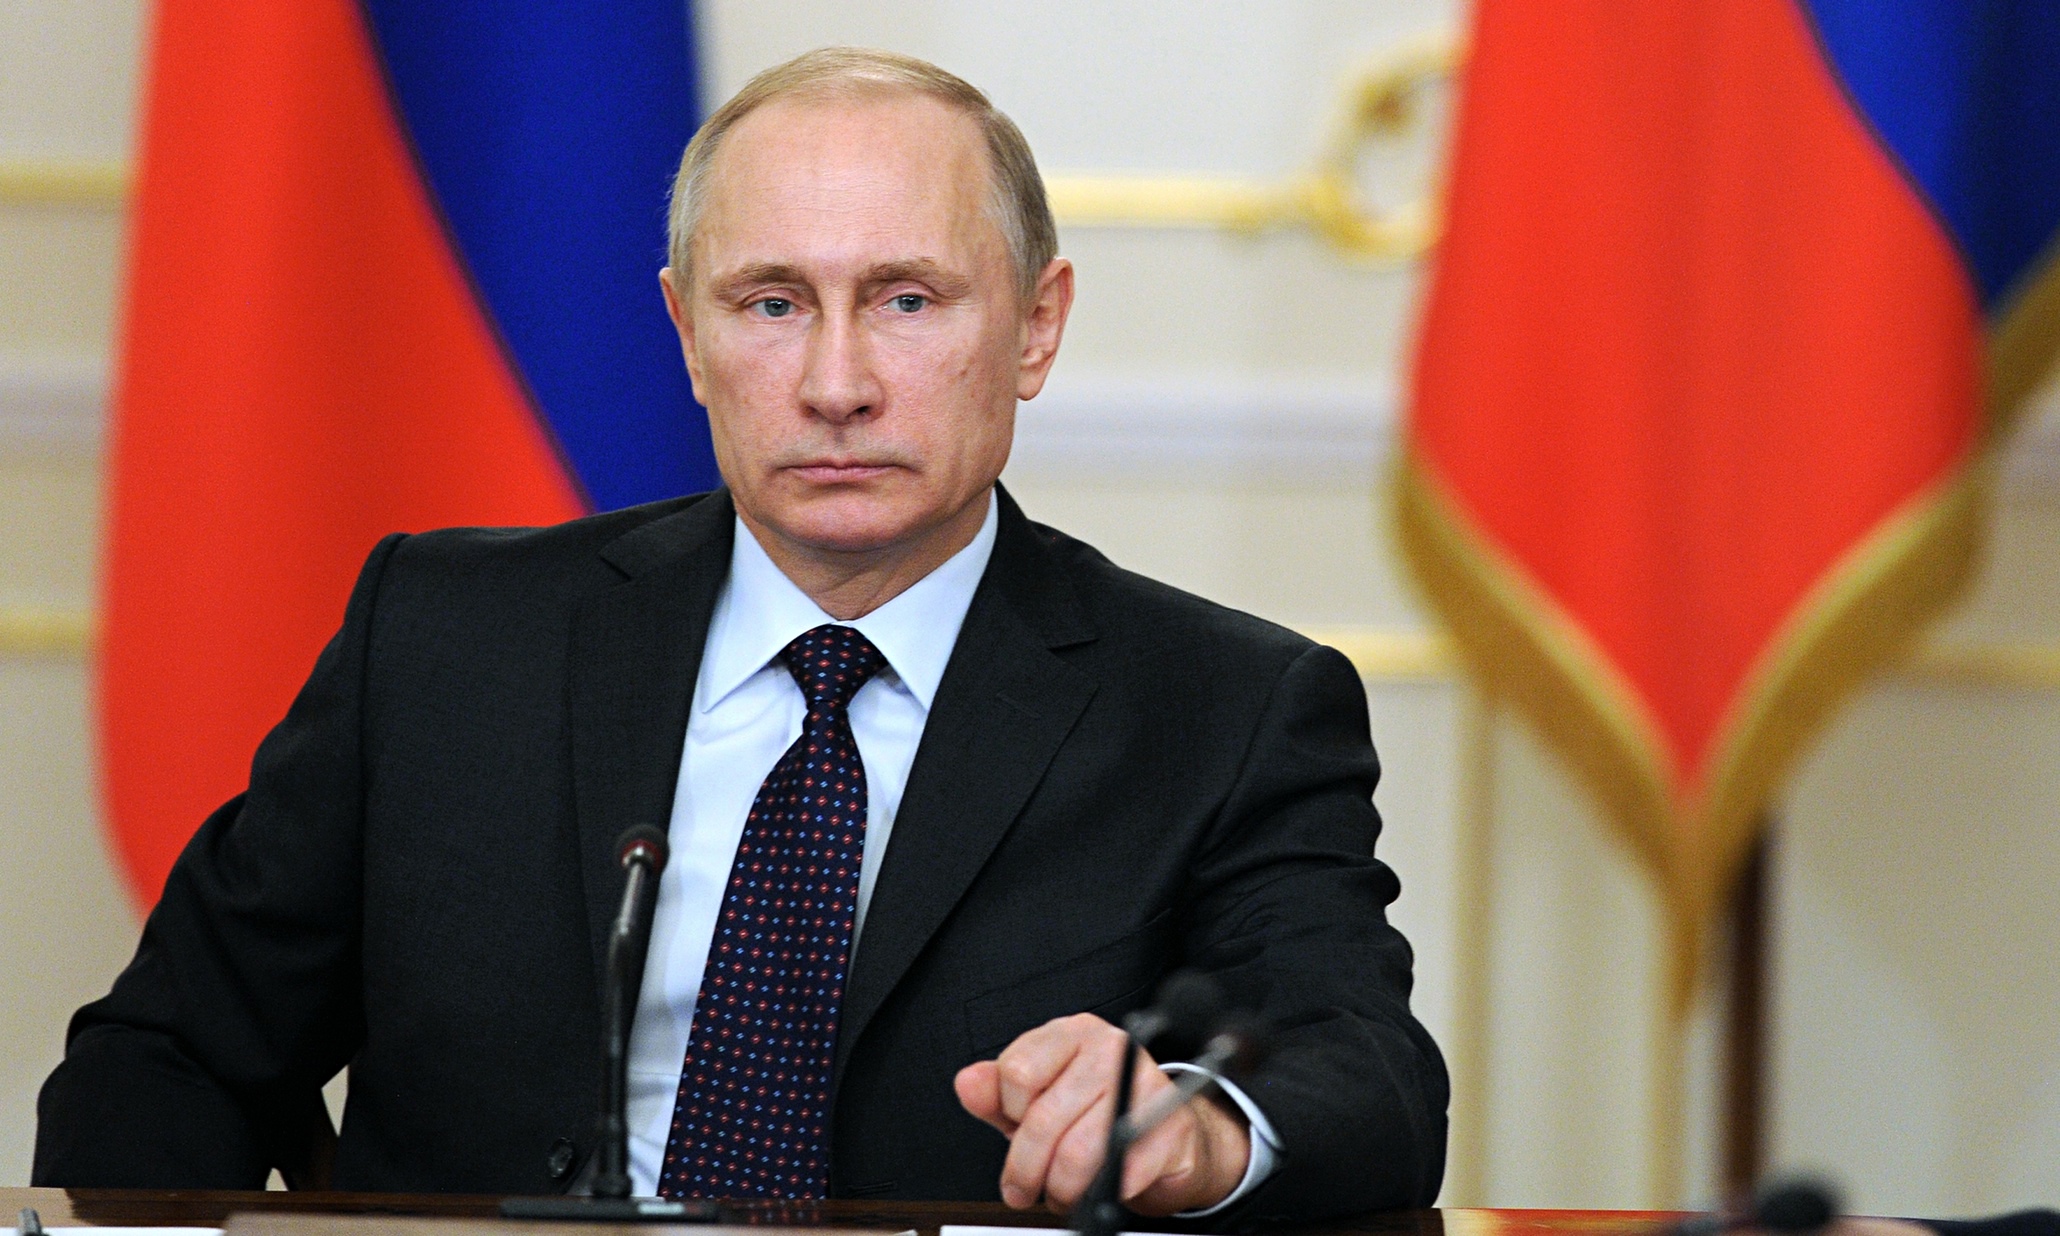 Β.Πούτιν: Συνεχάρη τον Α.Λουκασένκο για τη νίκη του στις προεδρικές εκλογές της Λευκορωσίας